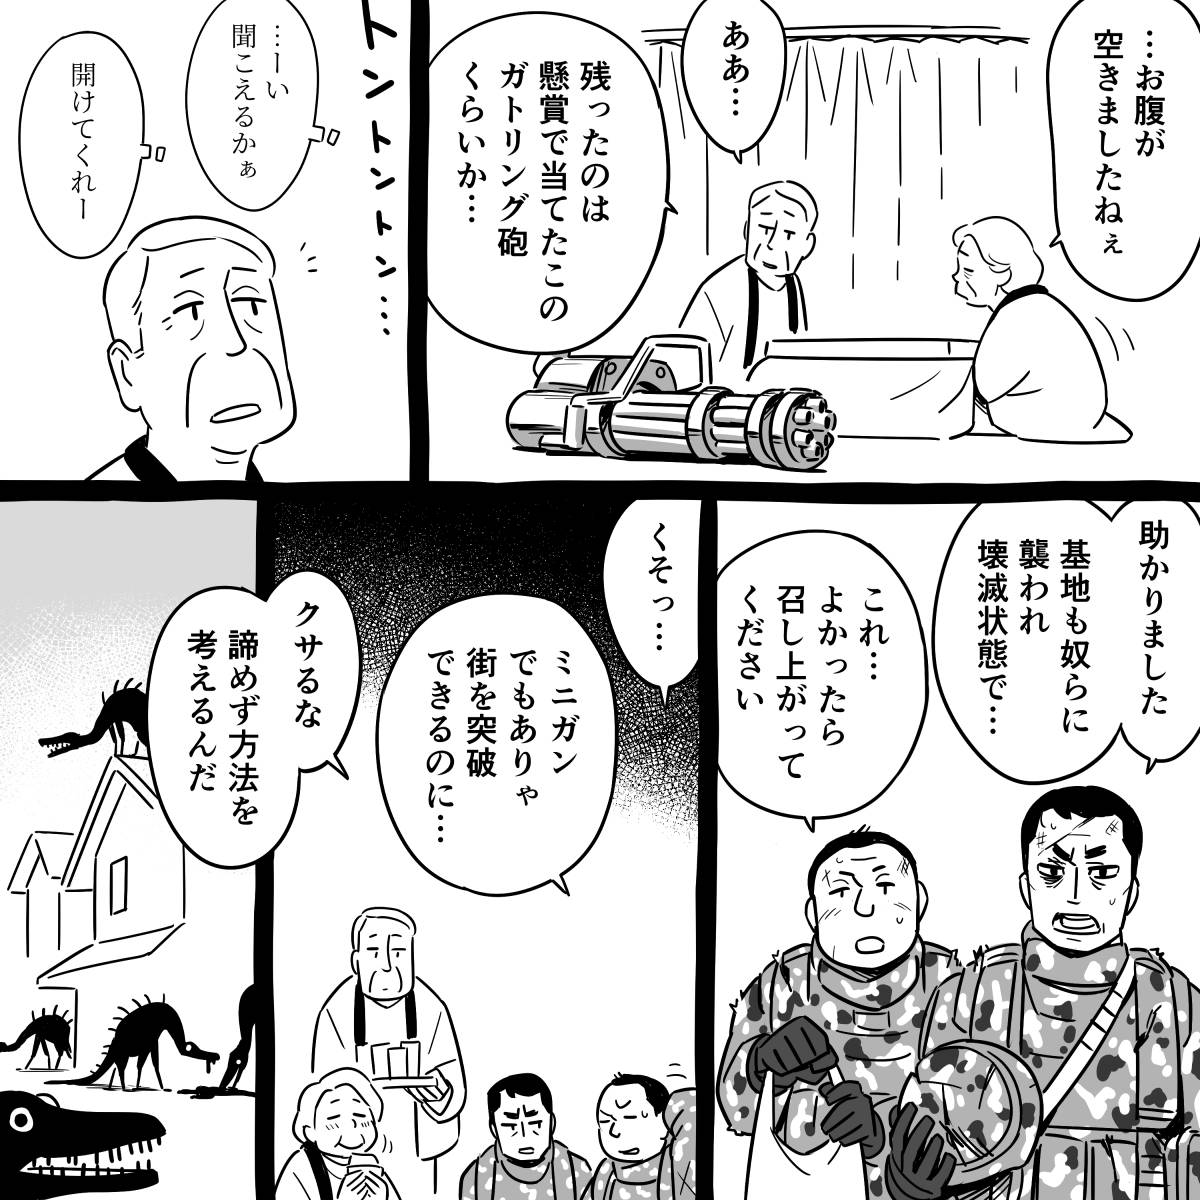 マンガ「突破口」  #漫画が読めるハッシュタグ